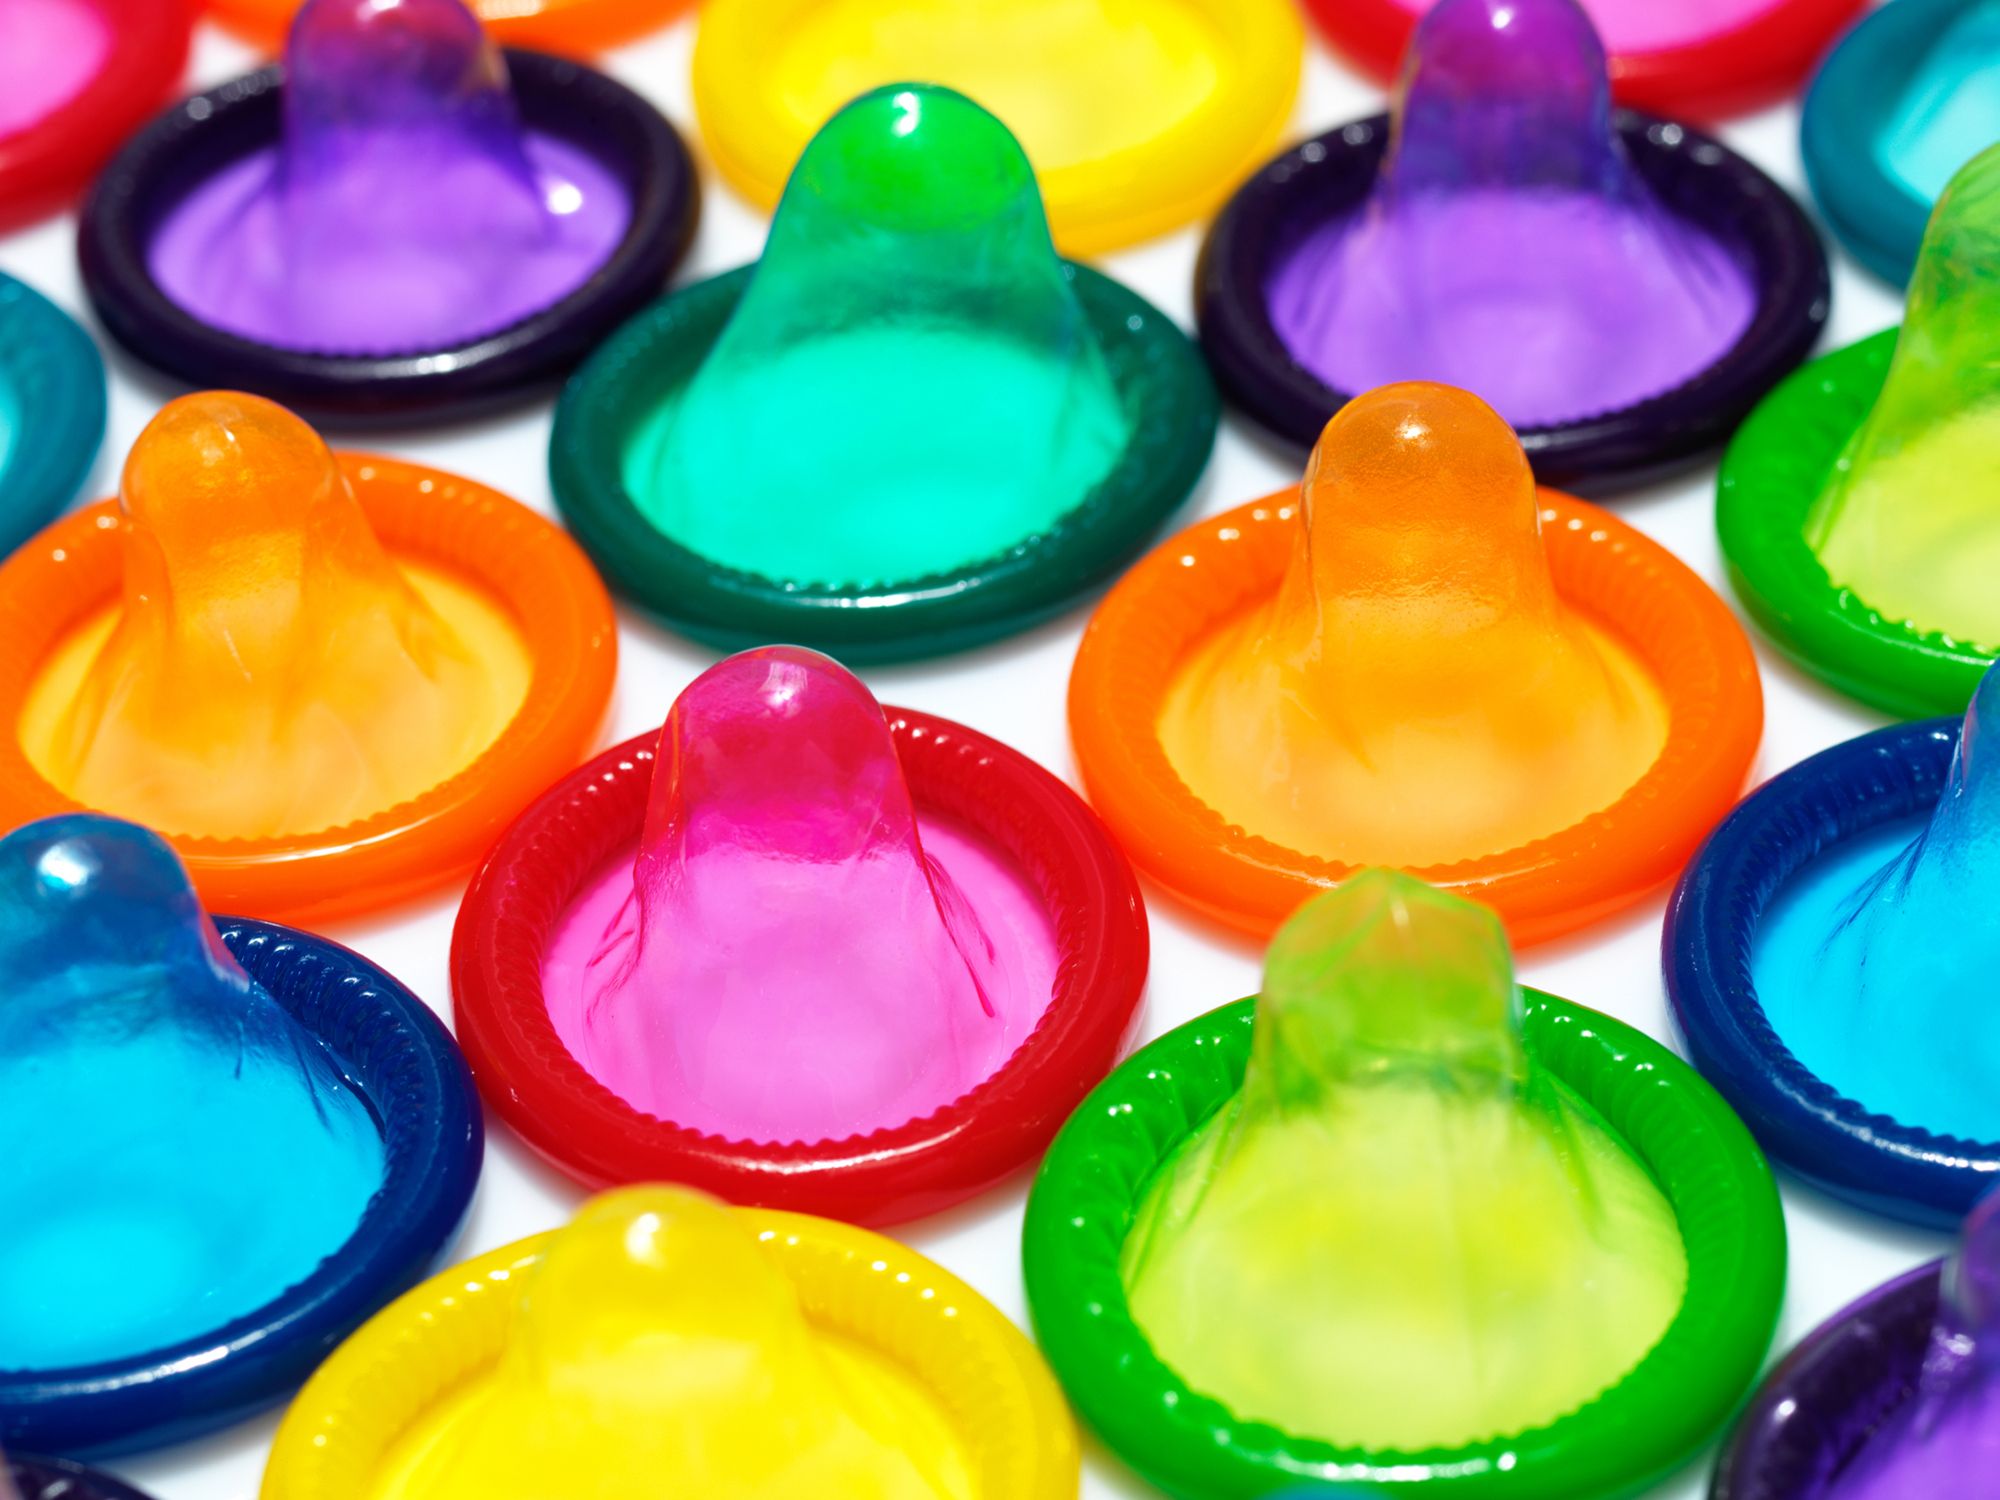 Verschiedene bunte Kondome in einer Reihe